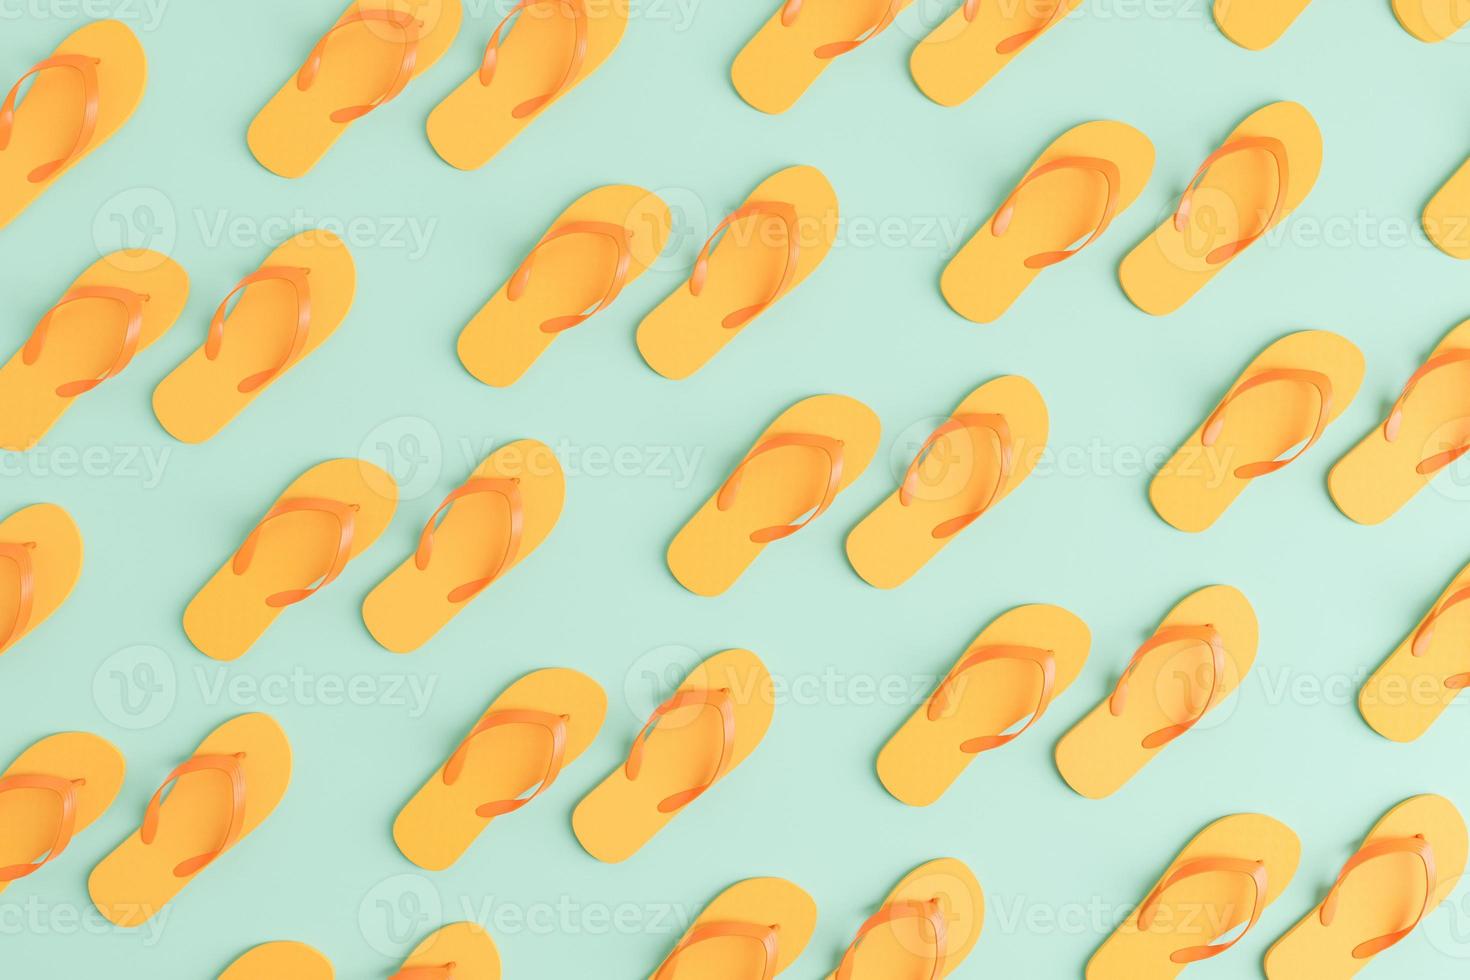 pastel orange flip flops pattern photo